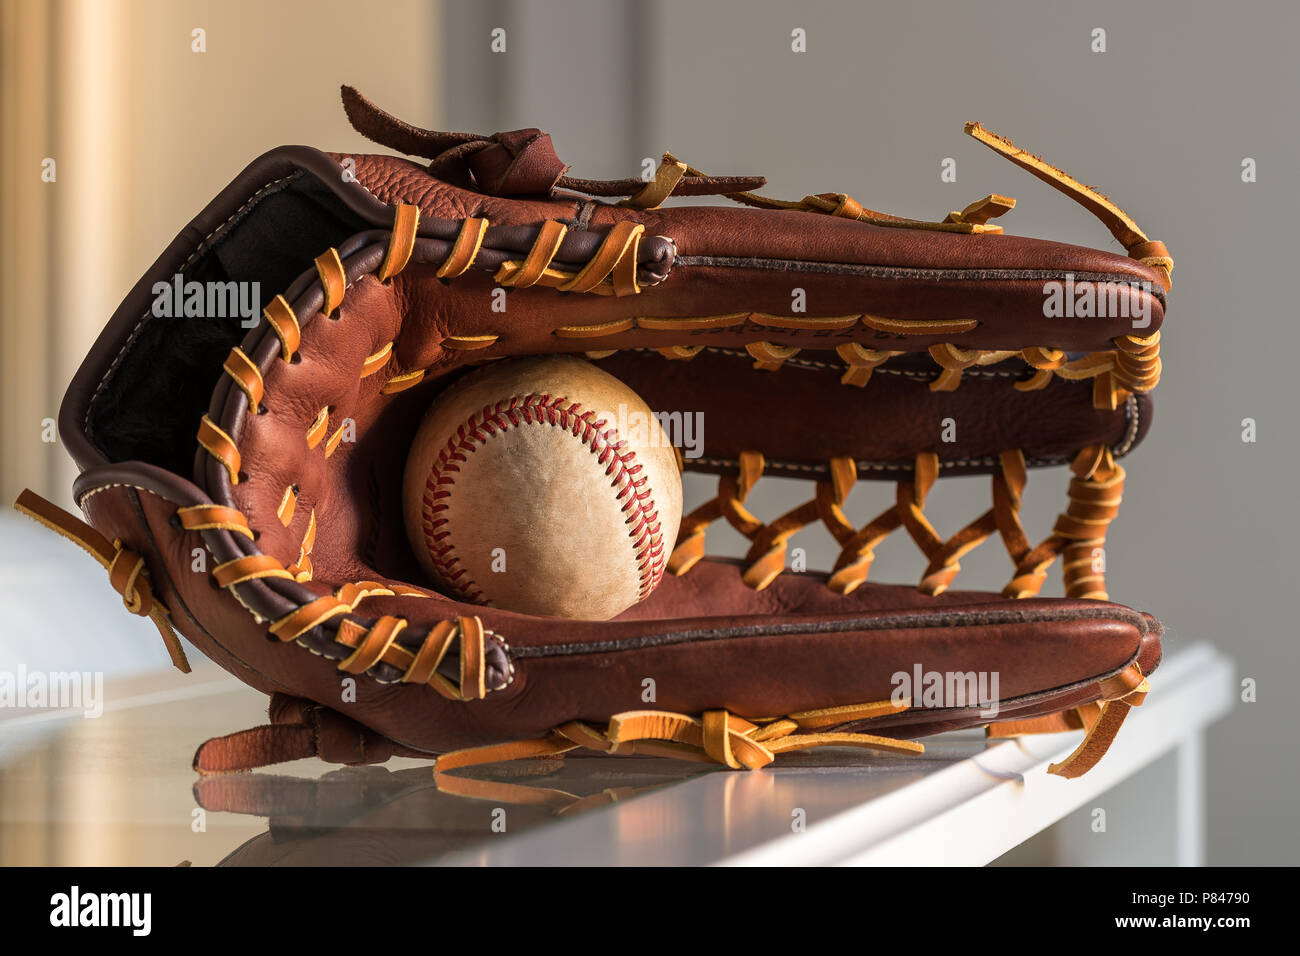 Close-up de una pelota de béisbol usado dentro de un guante de béisbol, cuero marrón sobre la llanura, fondo gris. Foto de stock